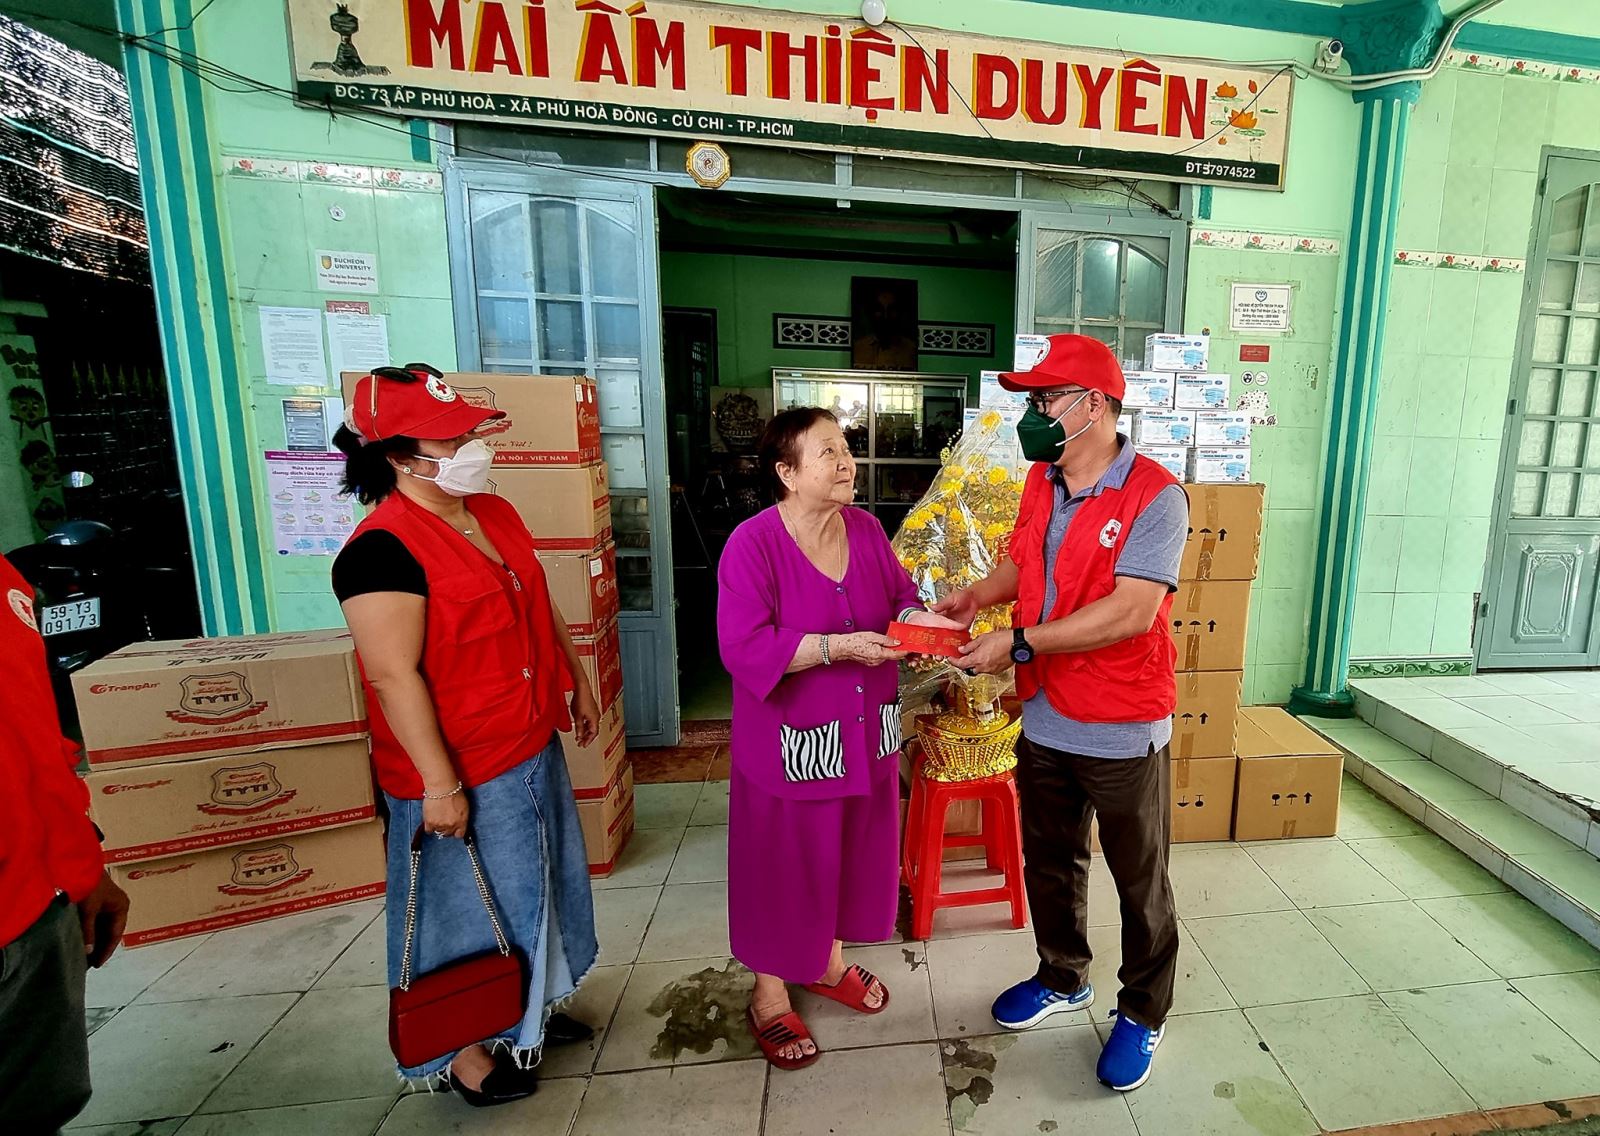 CLB Doanh nhân Chữ Thập Đỏ đến thăm và tặng quà cho mái ấm Thiện Duyên ở xã Phú Hòa Đông, huyện Củ Chi, TpHCM